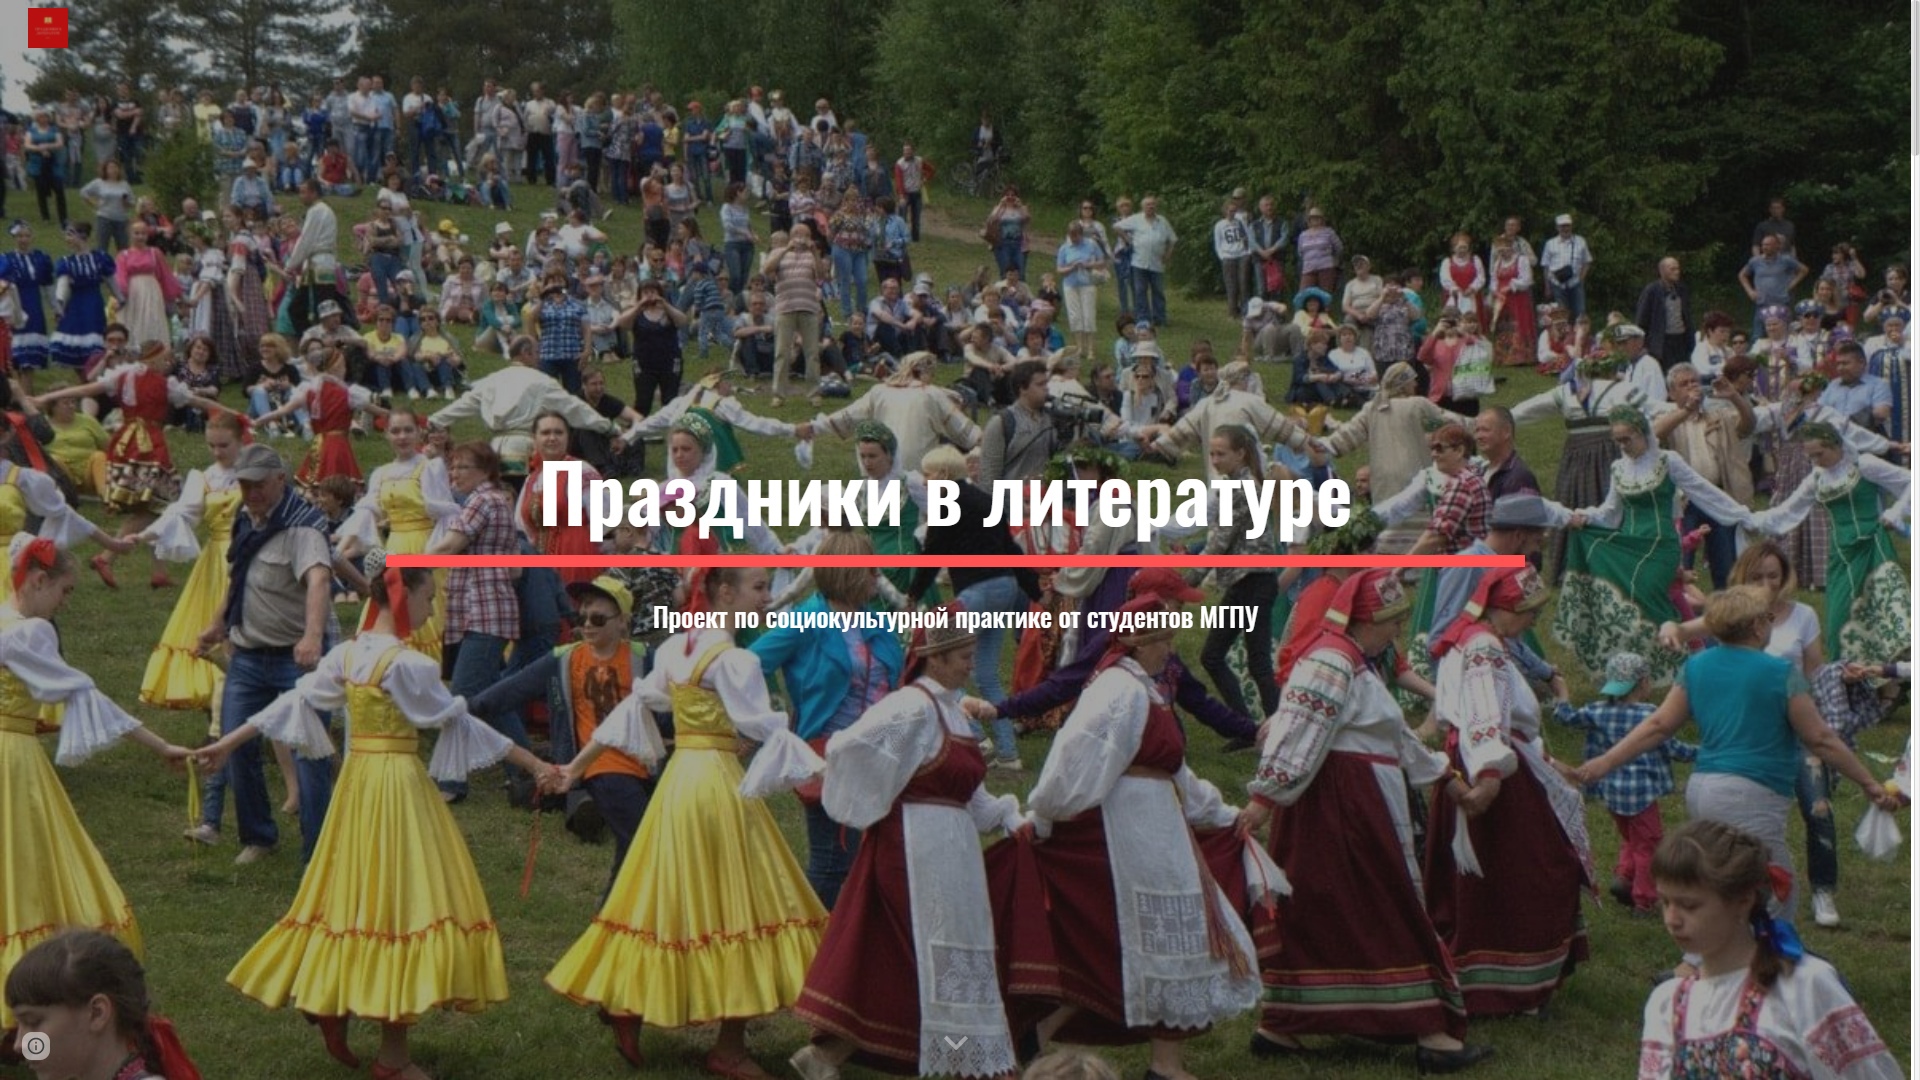 Коринь, Пономарева, Николаев - праздники в литературе